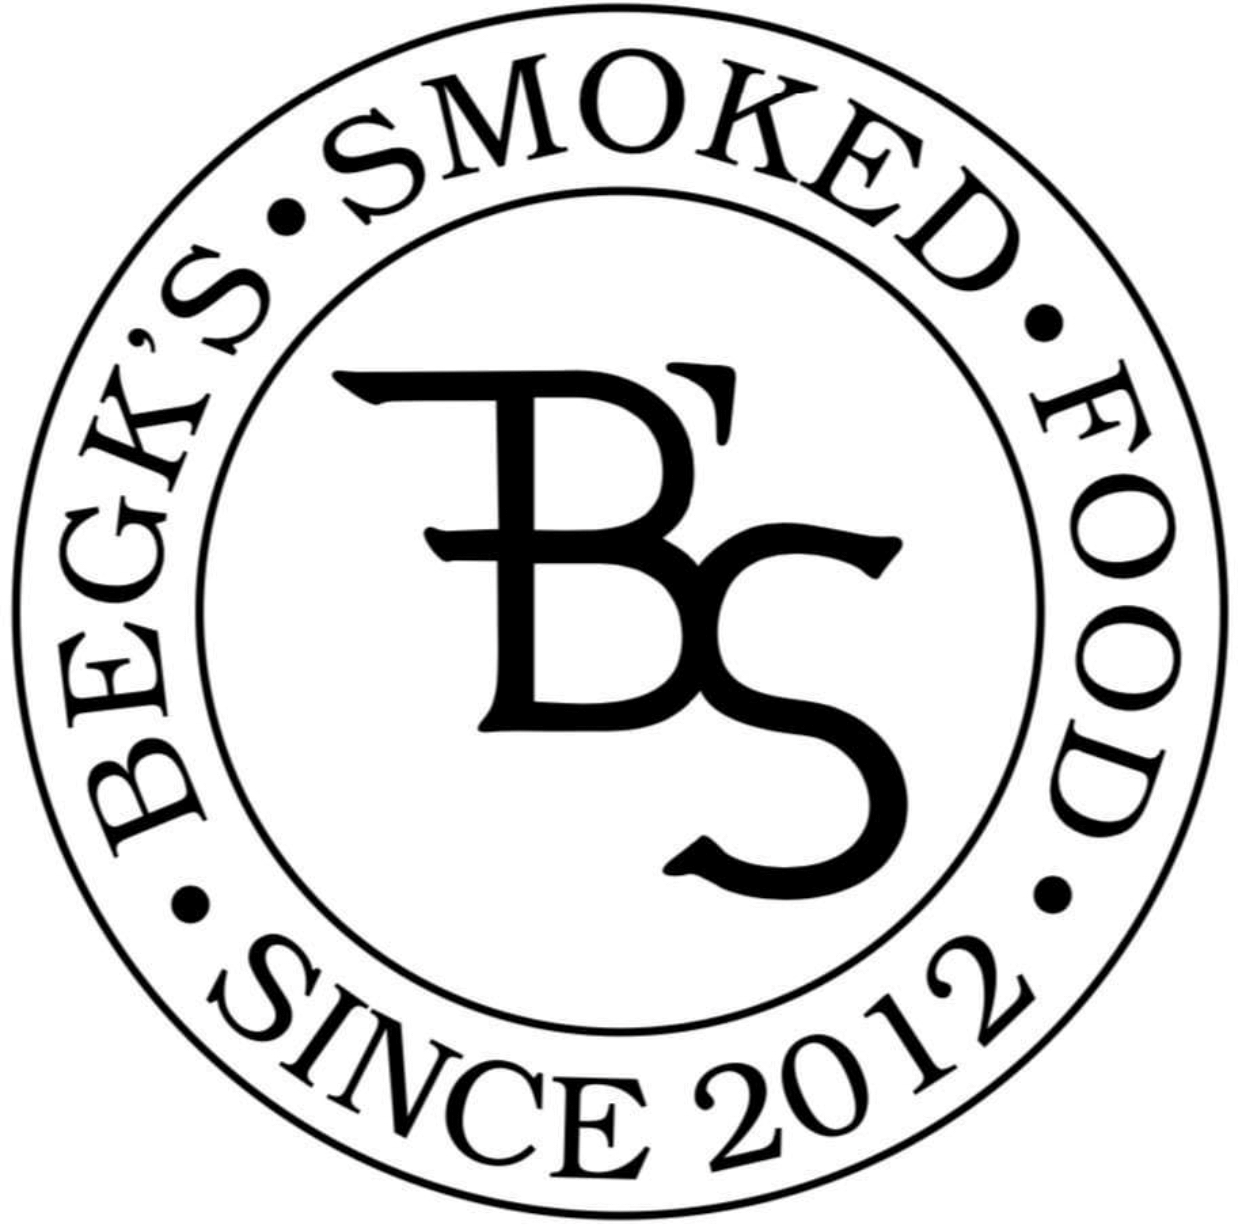 Begk's Smoked food Logo